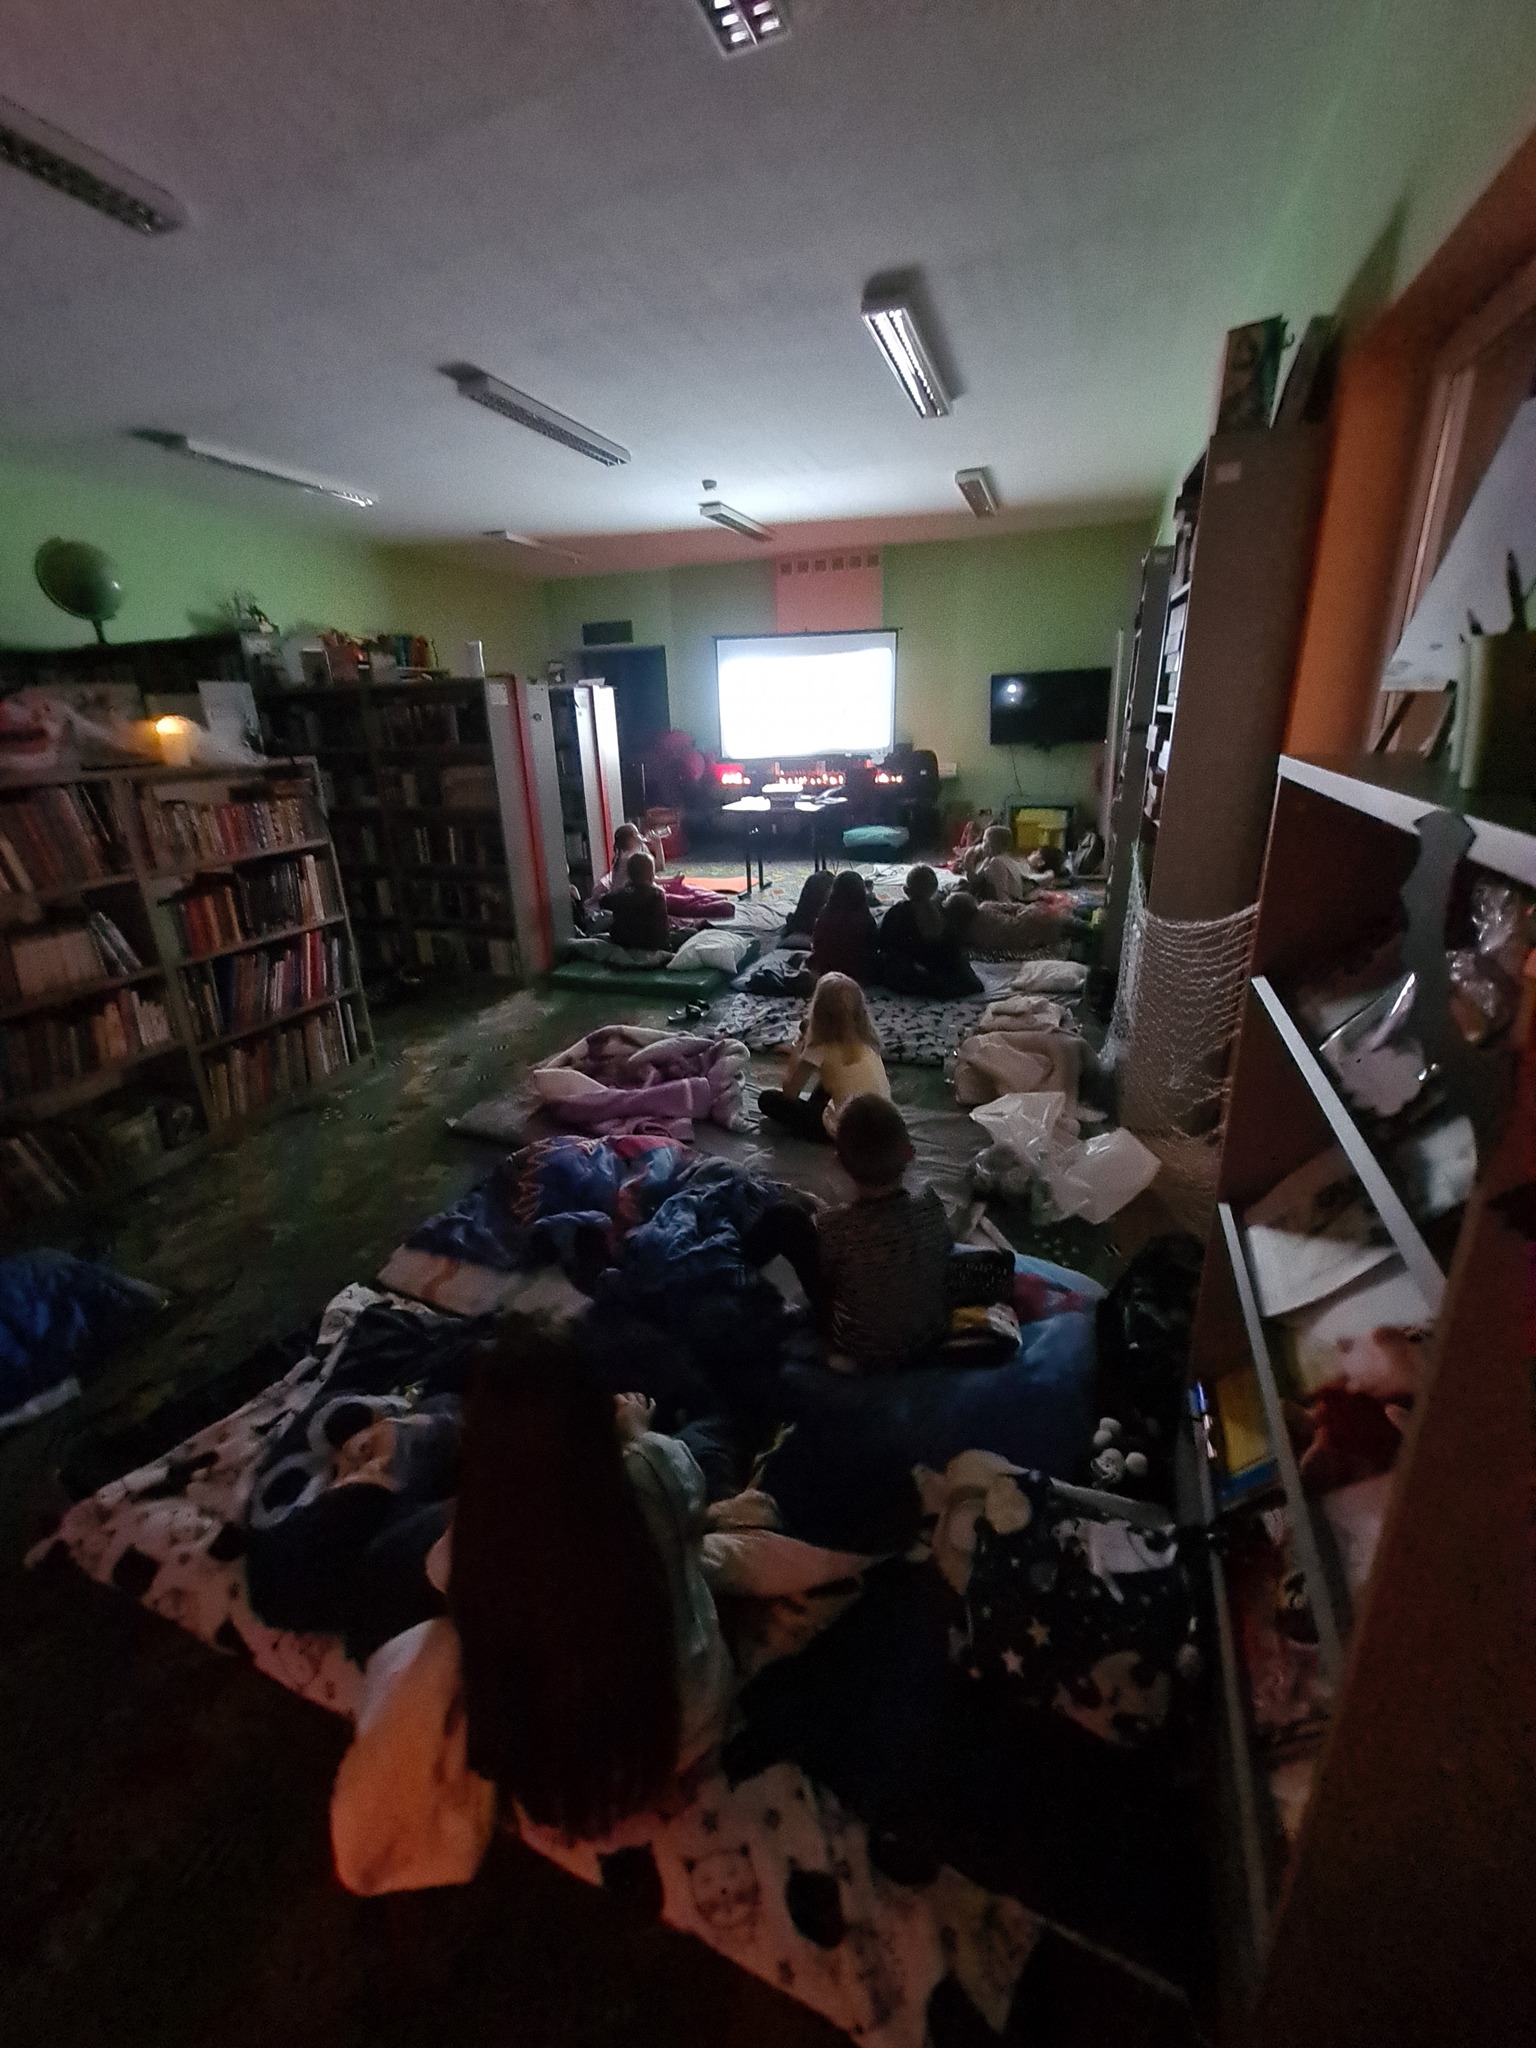 dzieci leżą na materacach w oddziale dla dzieci i oglądają film na ekranie projektora przy zgaszonym świetle